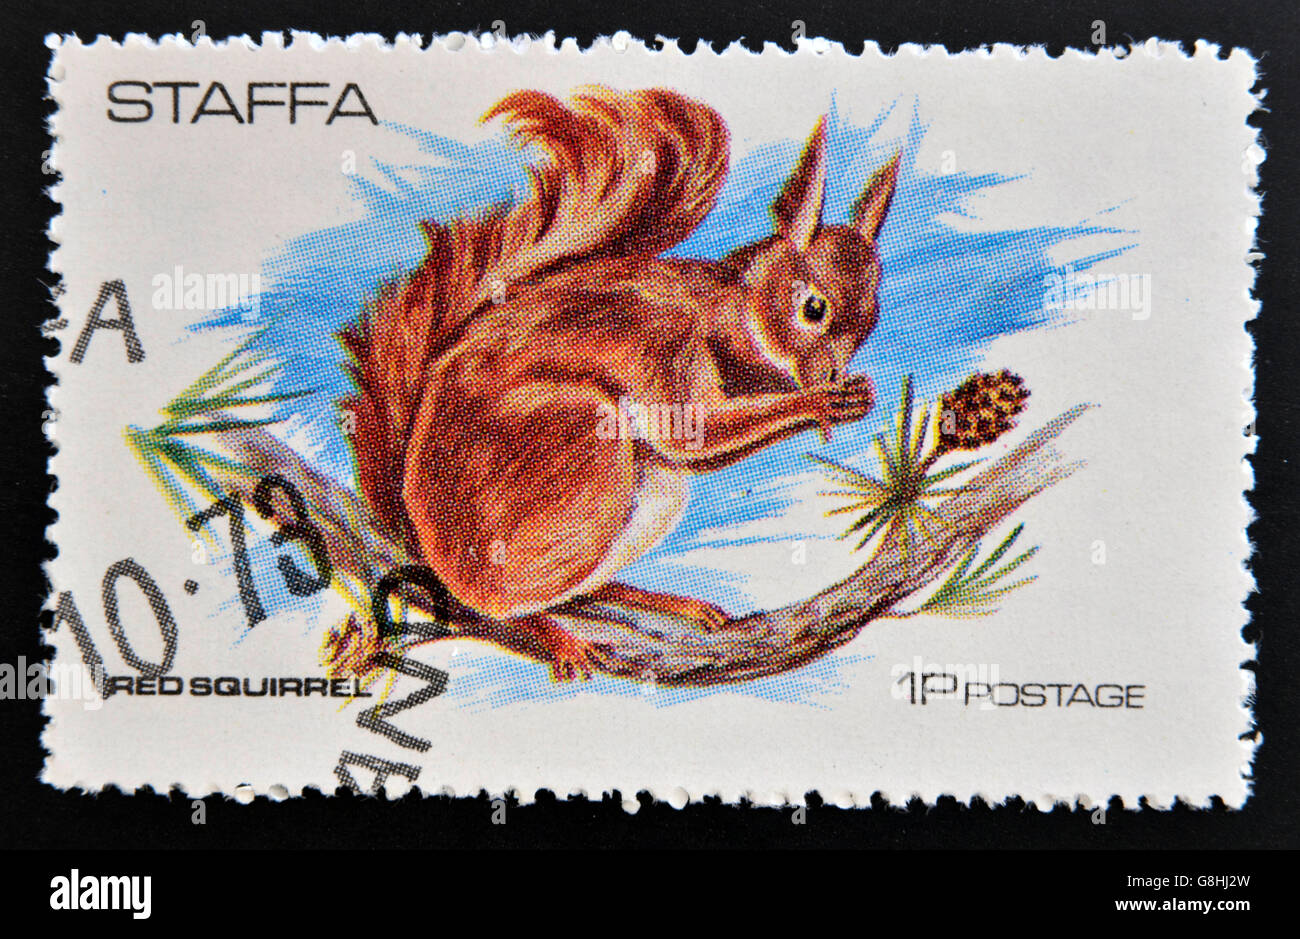 STAFFA - CIRCA 1973: stamp printed in Staffa shows red squirrel, circa 1973 Stock Photo